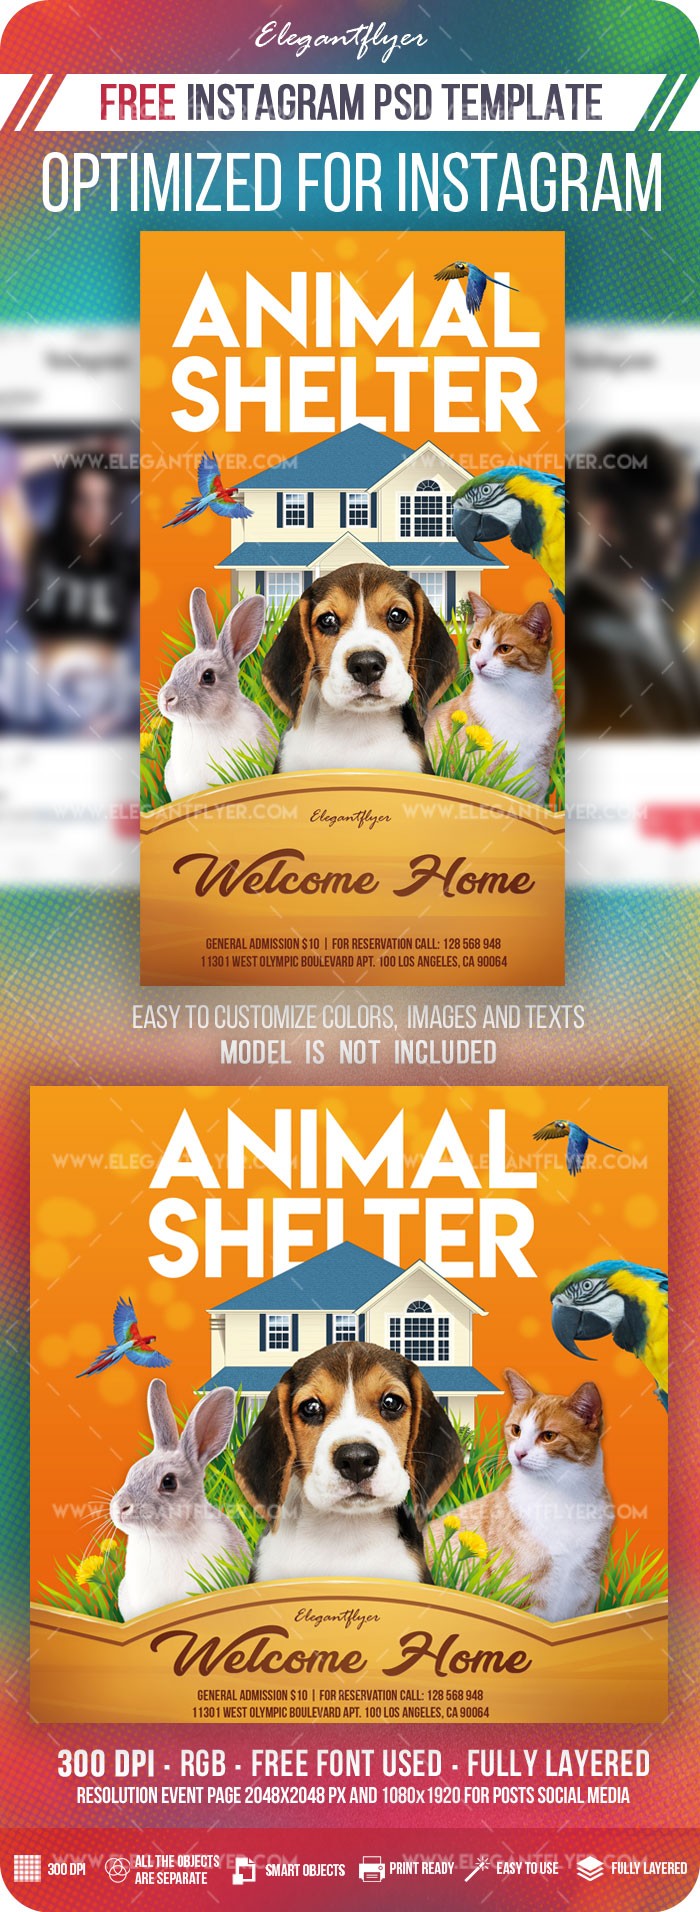 Animal Shelter Instagram by ElegantFlyer